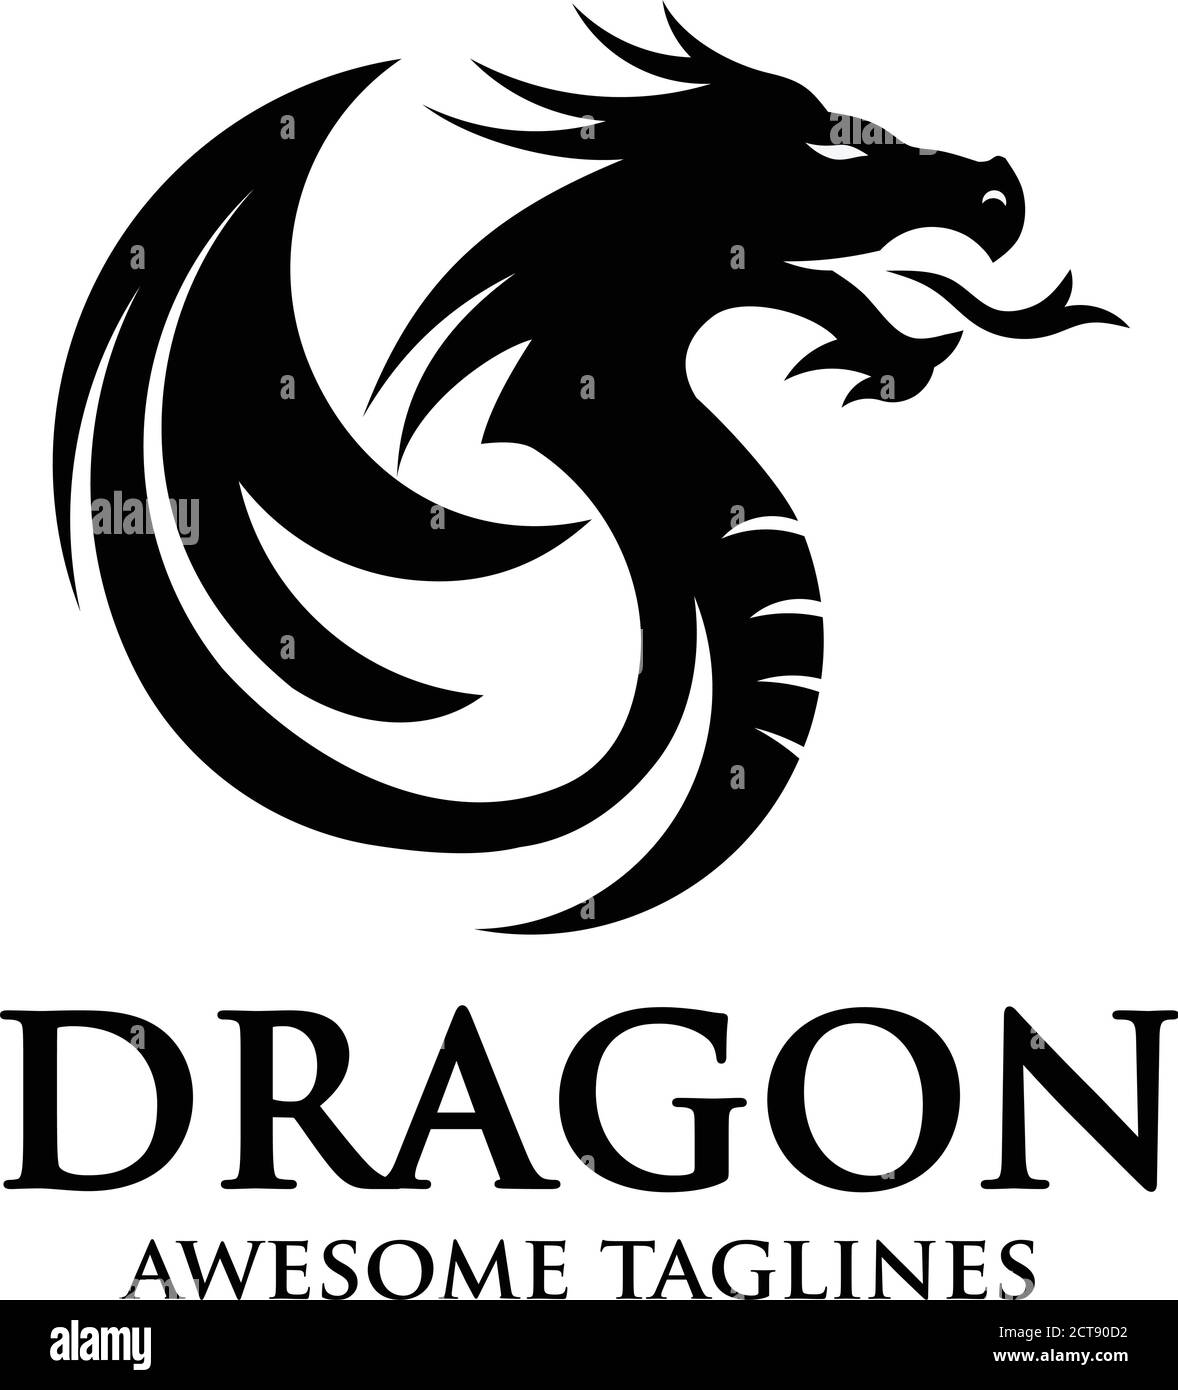 creative dragon silhouette circle logo design vector illustration Stock Vector